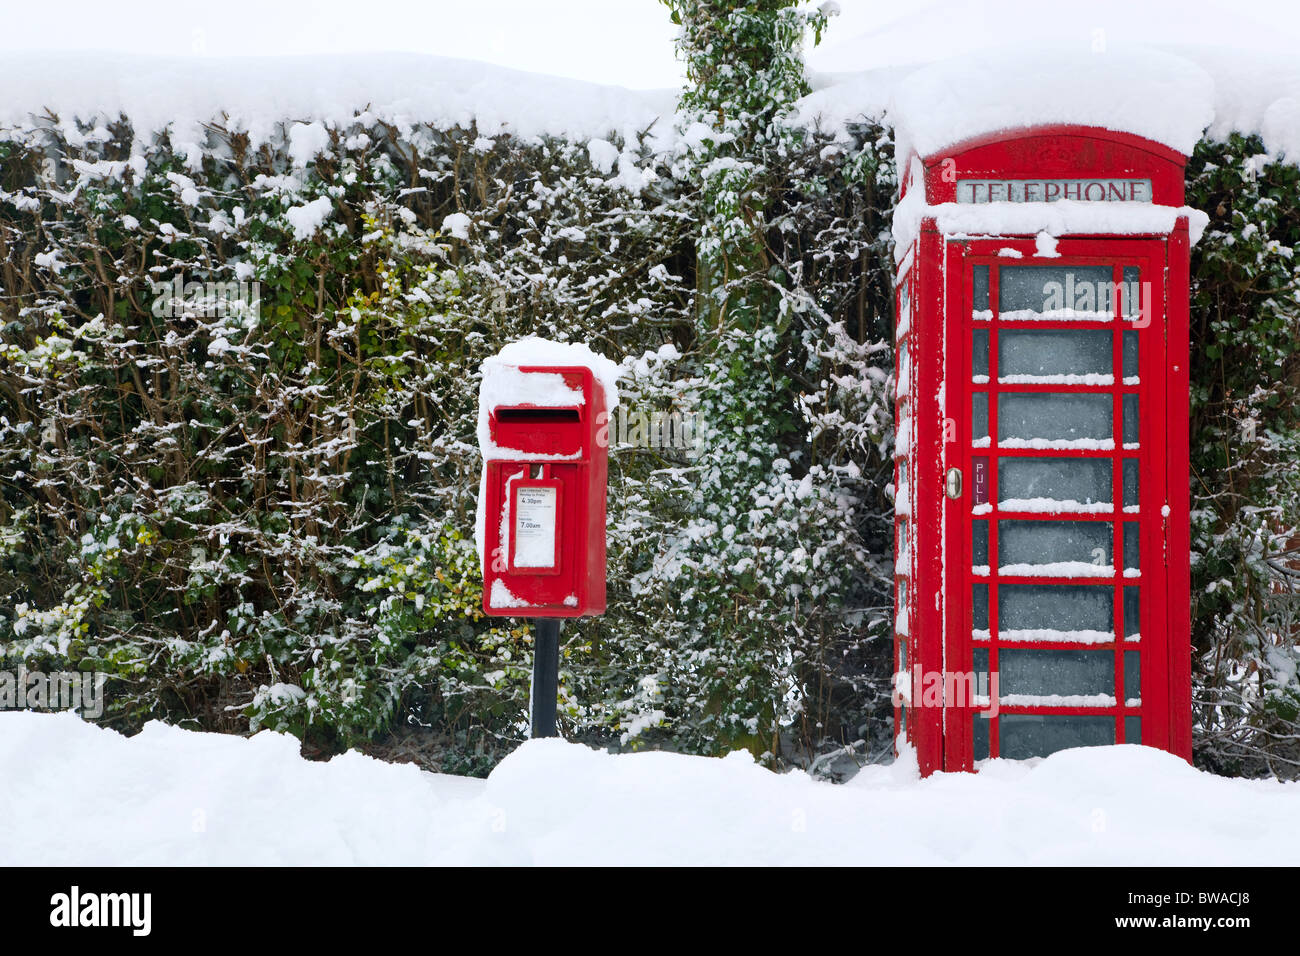 Un téléphone public anglais rouge traditionnel et post box après une forte chute de neige. Banque D'Images